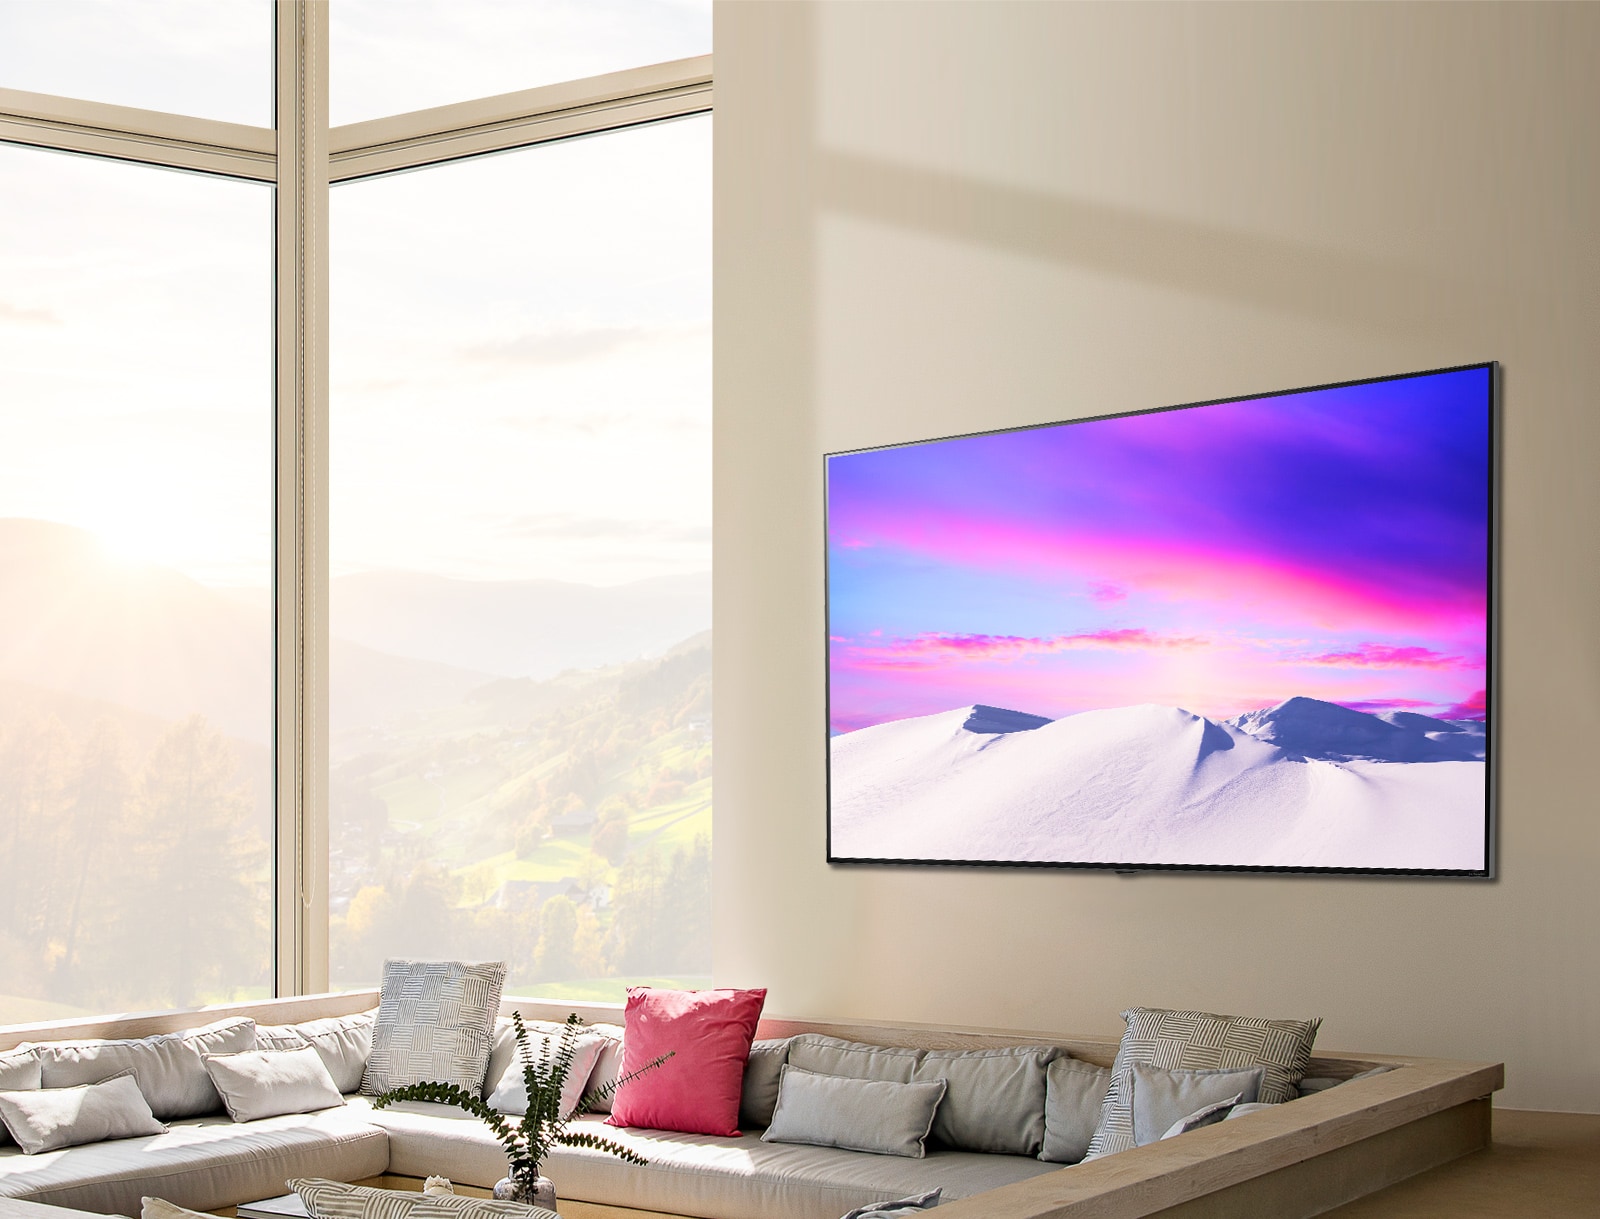  Soporte de pared para televisor LG de 75 pulgadas clase  NanoCell serie 80 LED 4K UHD Smart webOS TV (75NANO80UPA) - Perfil bajo de  1.7 pulgadas desde la pared, ángulo de